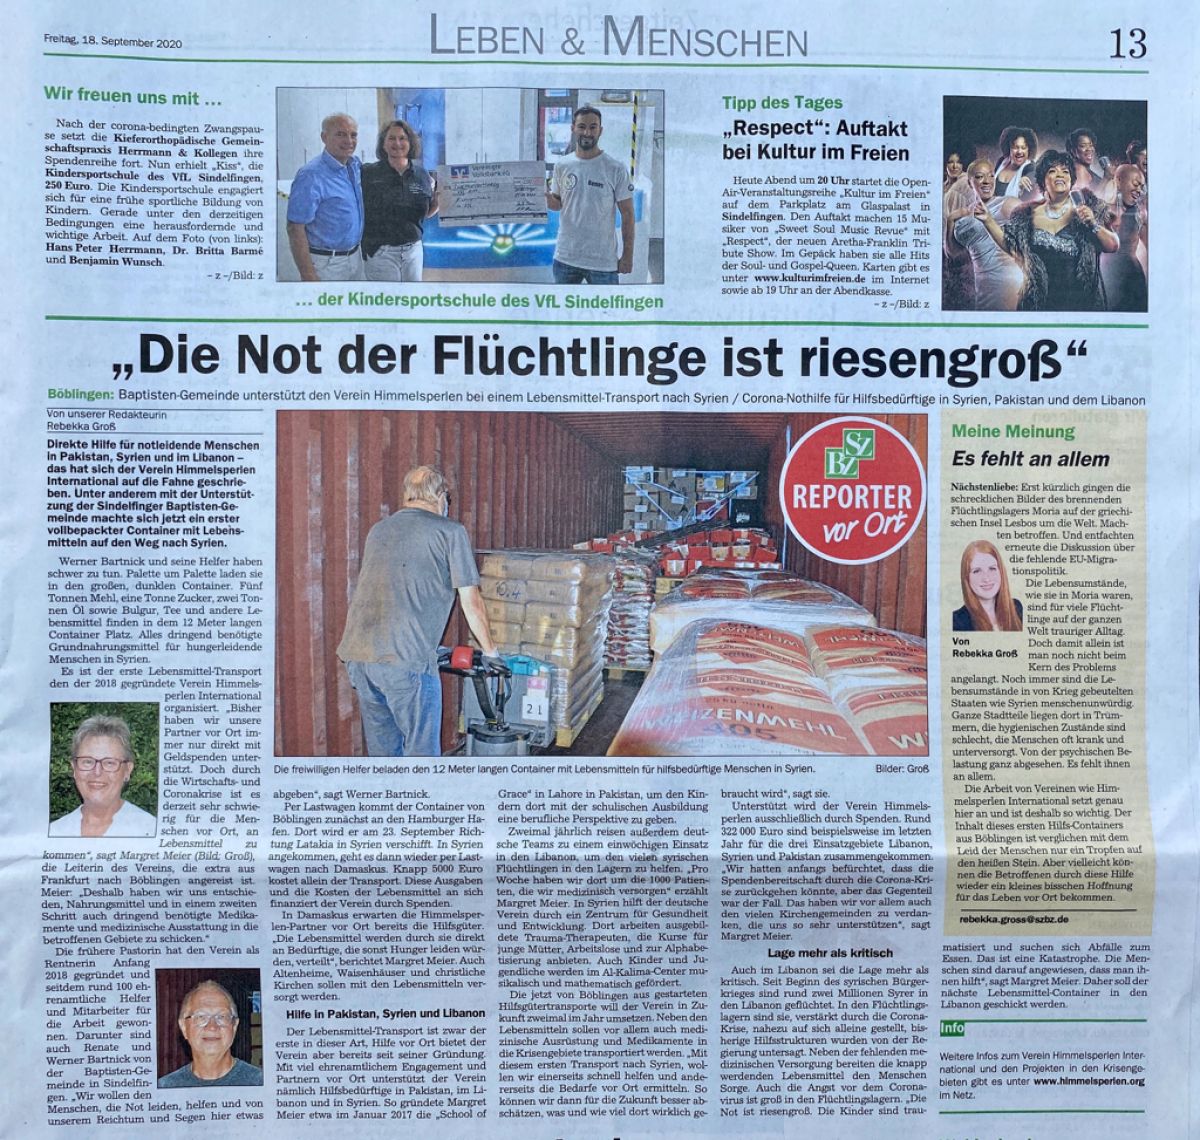 Die Not der Flüchtlinge ist riesengroß  Sindelfinger Böblinger Zeitung, 18.09.2020